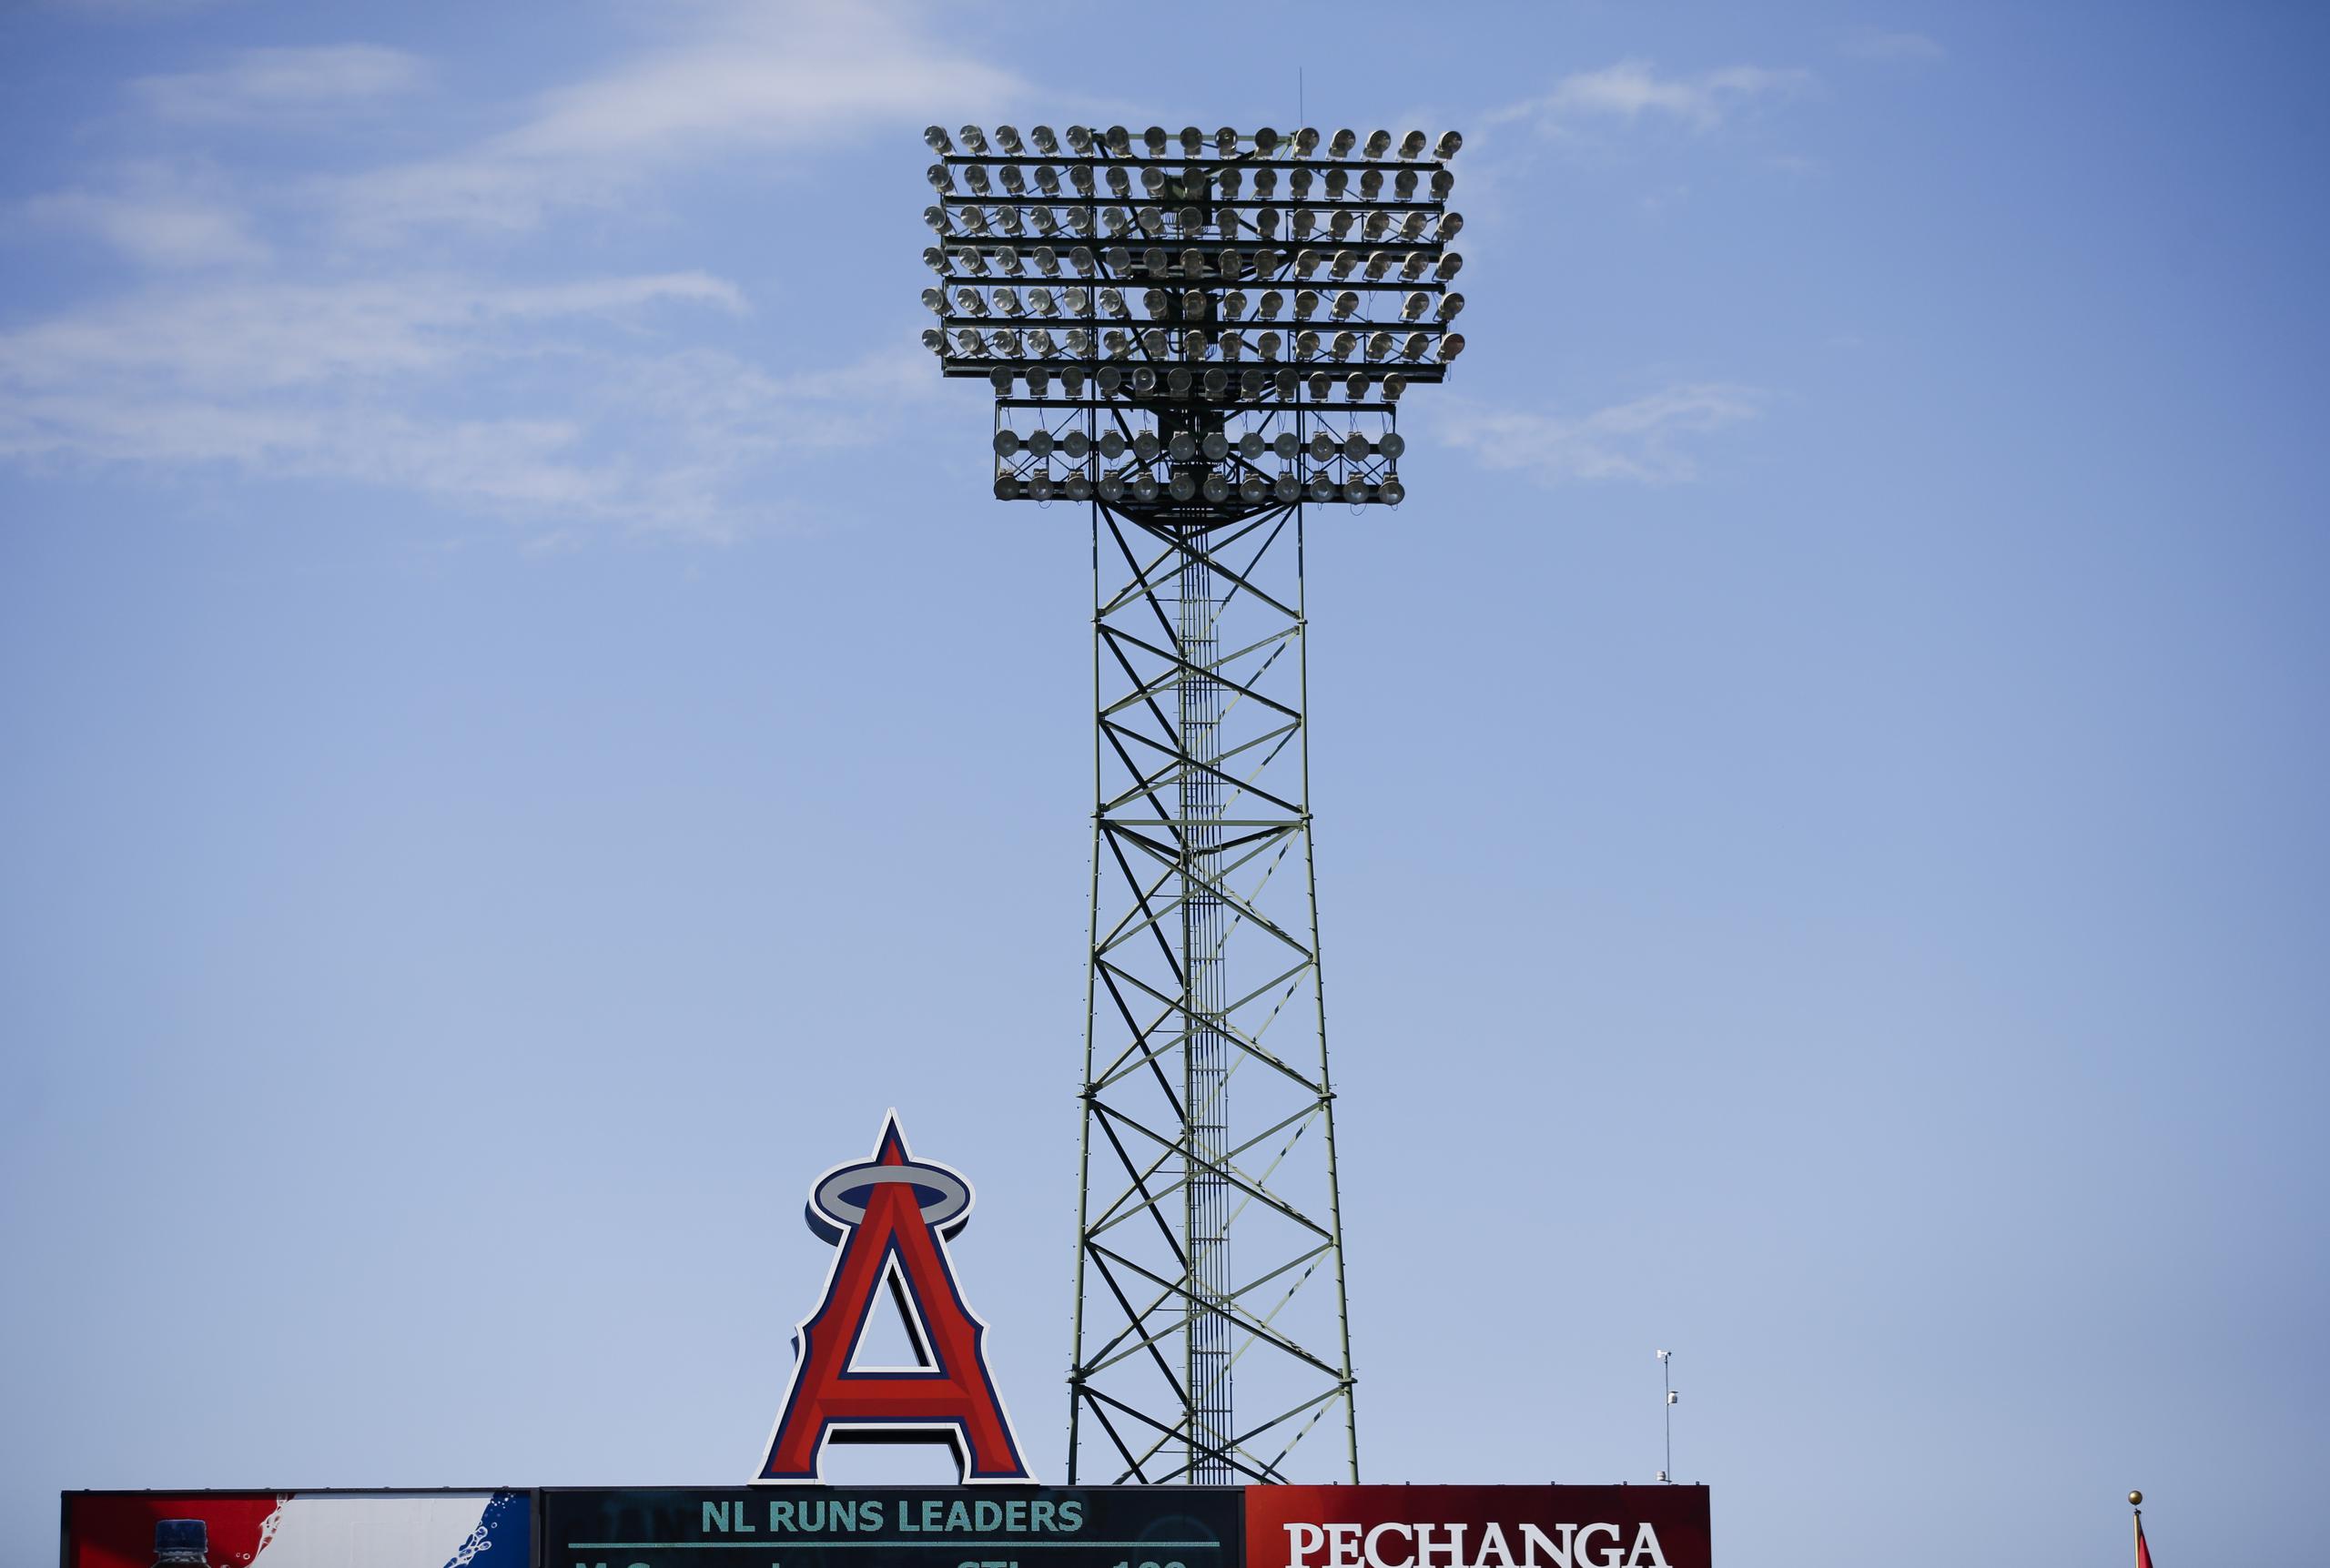 La franquicia de los Angels tiene su sede en Anaheim, California.